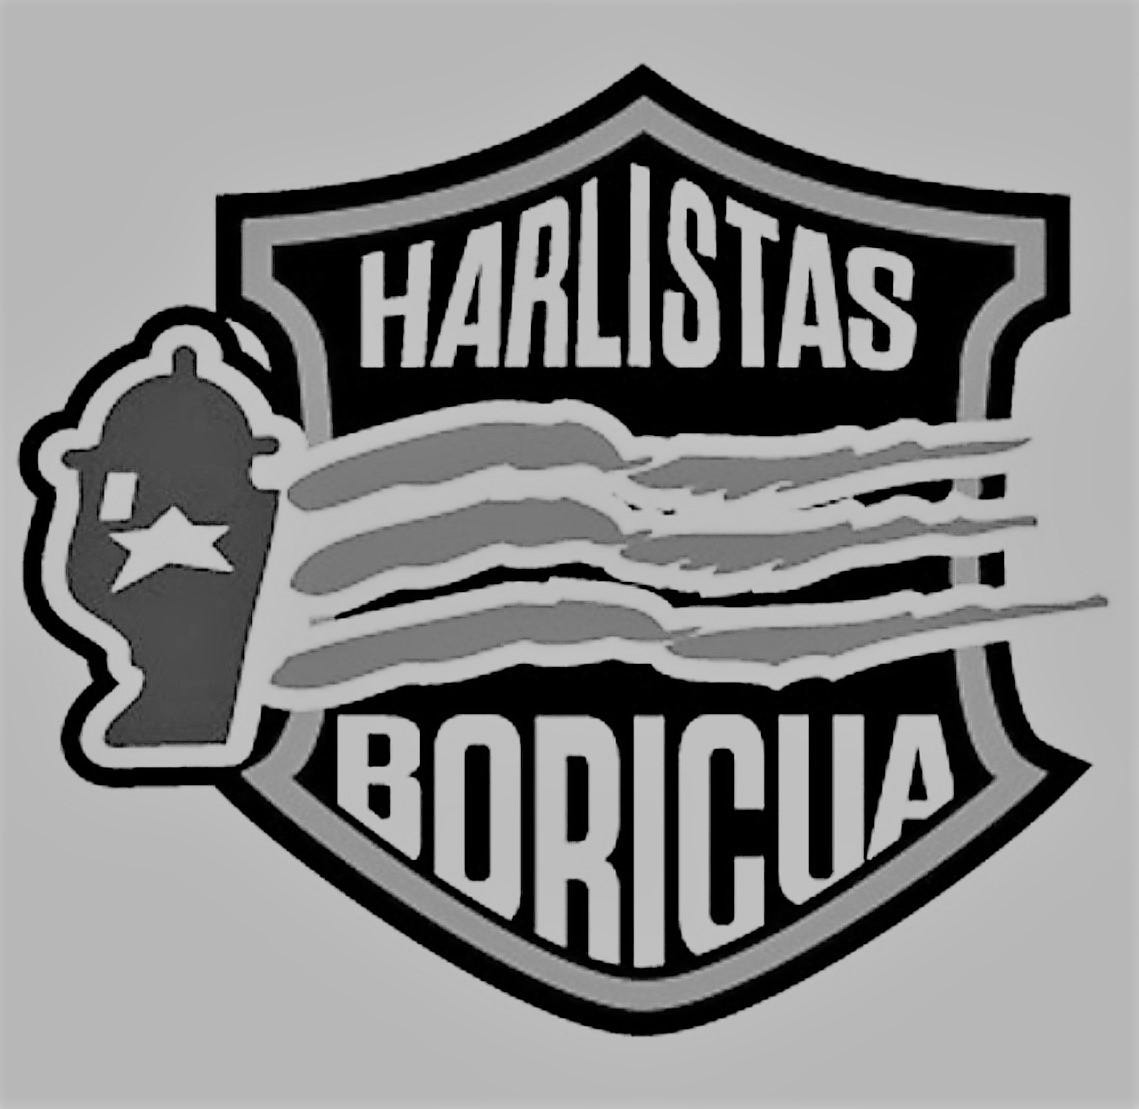  HARLISTAS BORICUA